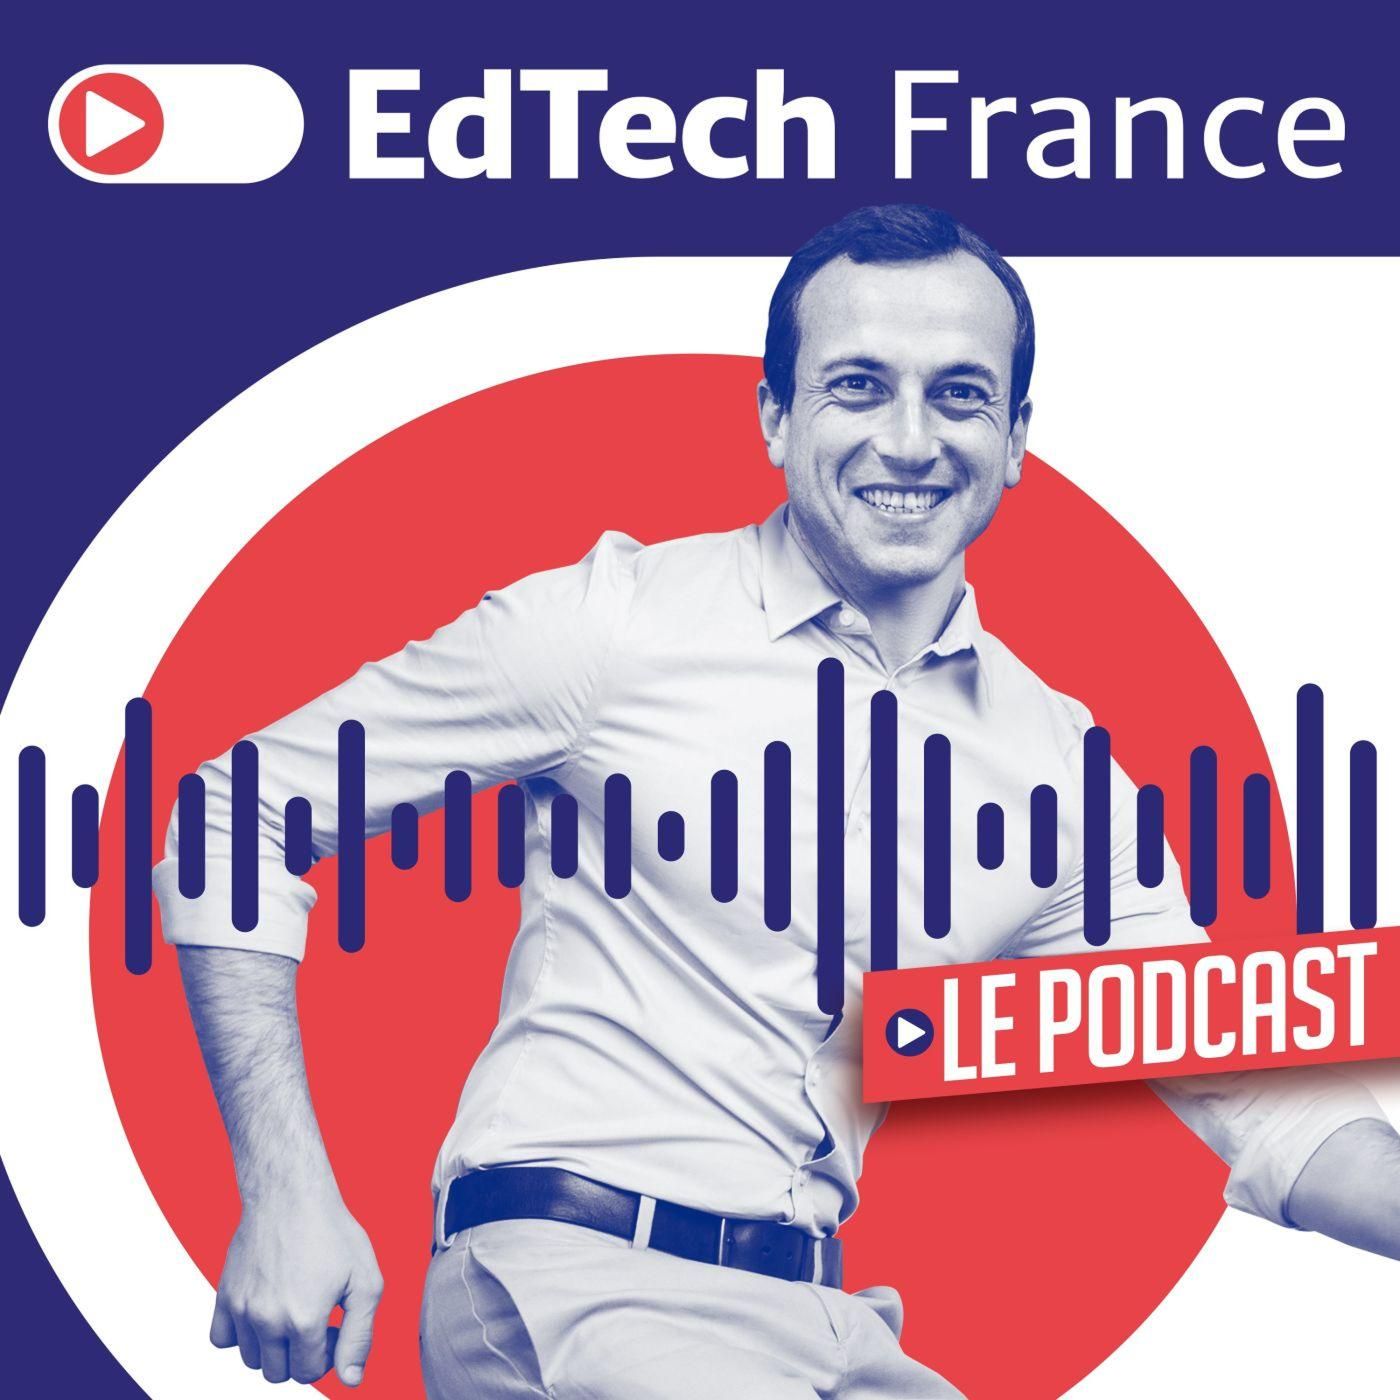 EdTech France podcast